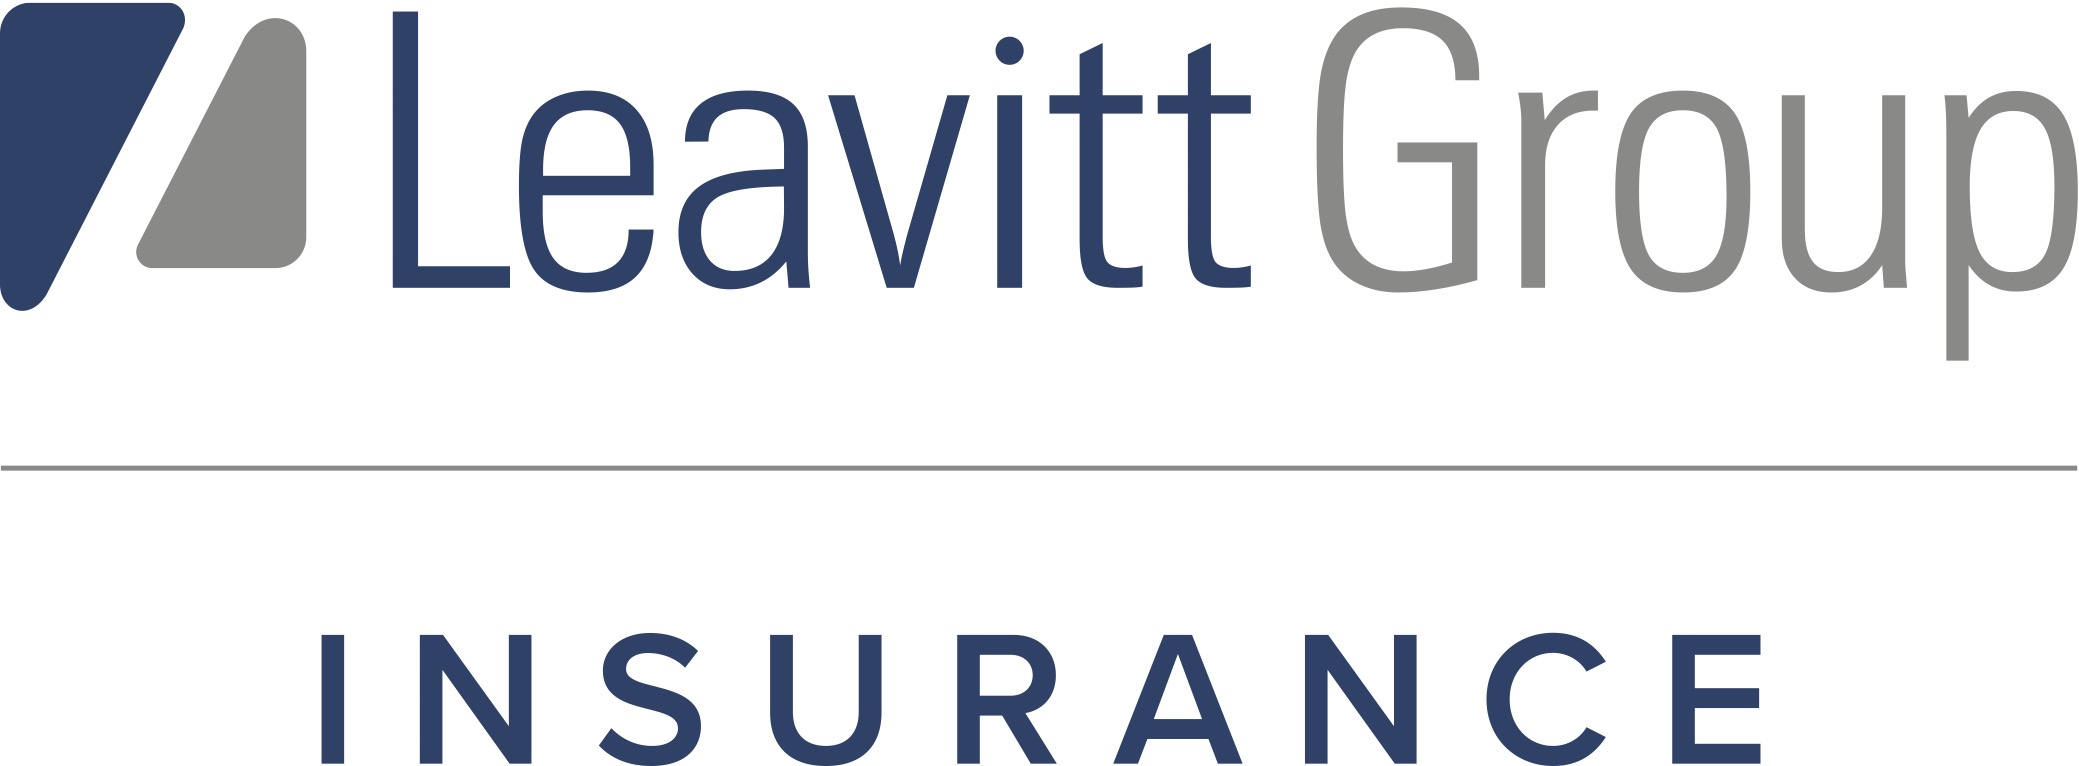 Leavitt Great West Insurance Company Logo